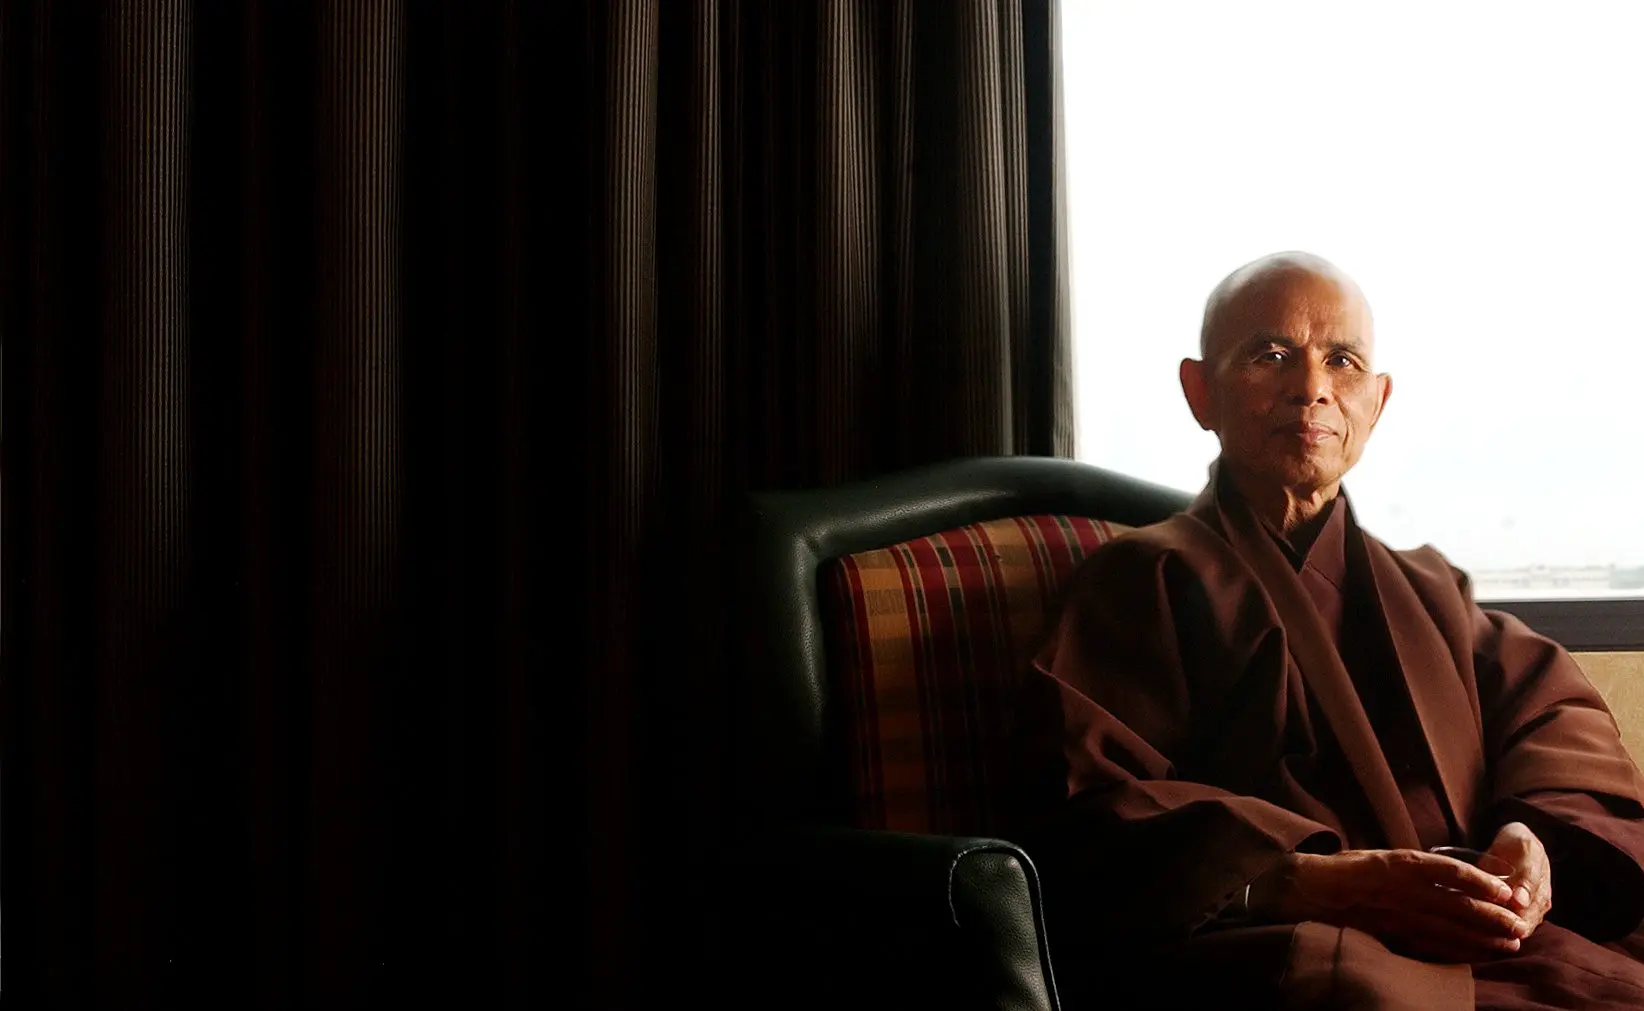 സെൻ ബുദ്ധ സന്യാസിയായിരുന്ന തിച്ച് നാറ്റ് ഹാൻ (95) അന്തരിച്ചു